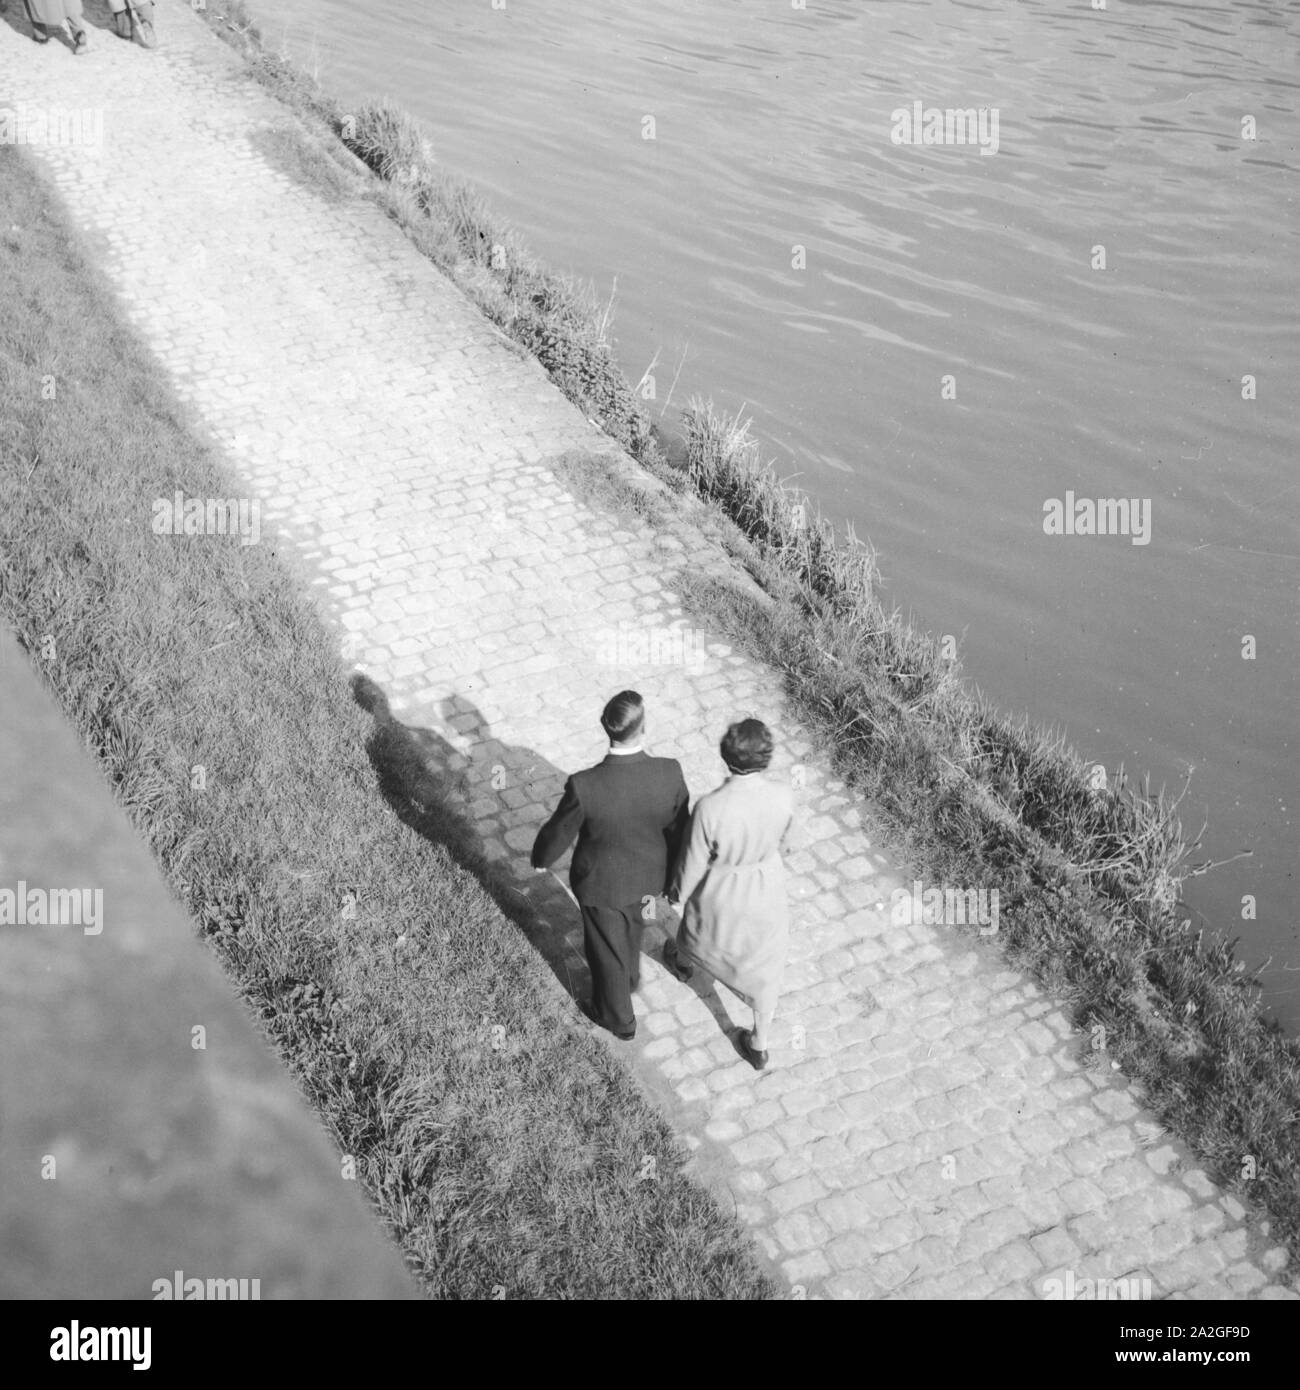 Ein Paar geht an einem Fluss spazieren, Deutschland 1930er Jahre. A couple strolling on the shore of a river, Germany 1930s. Stock Photo